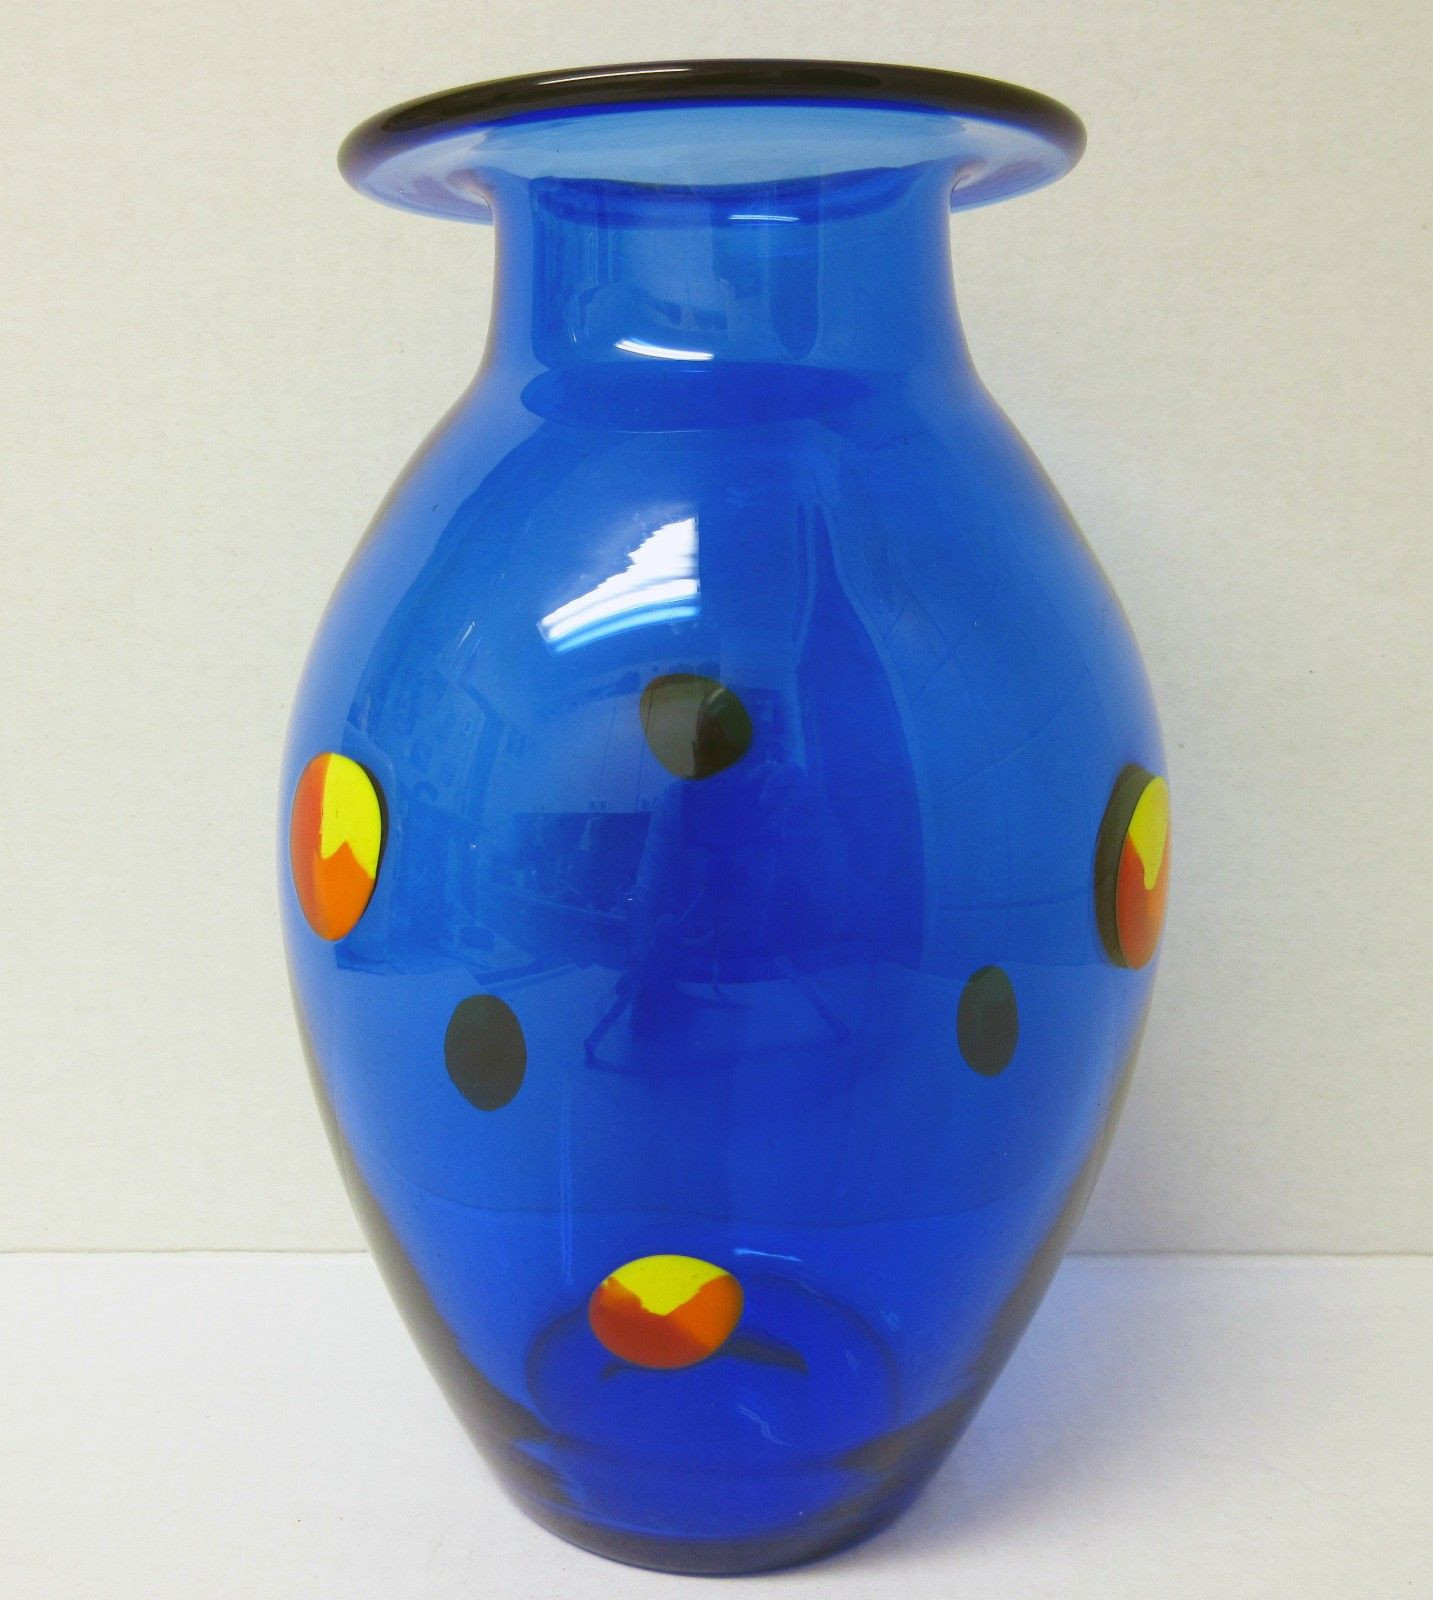 large cobalt blue vase of cobalt blue vases image living room cobalt blue vases new 4040cih with cobalt blue vases pics cobalt blue with multi color prunts orrefors sweden art glass vase of